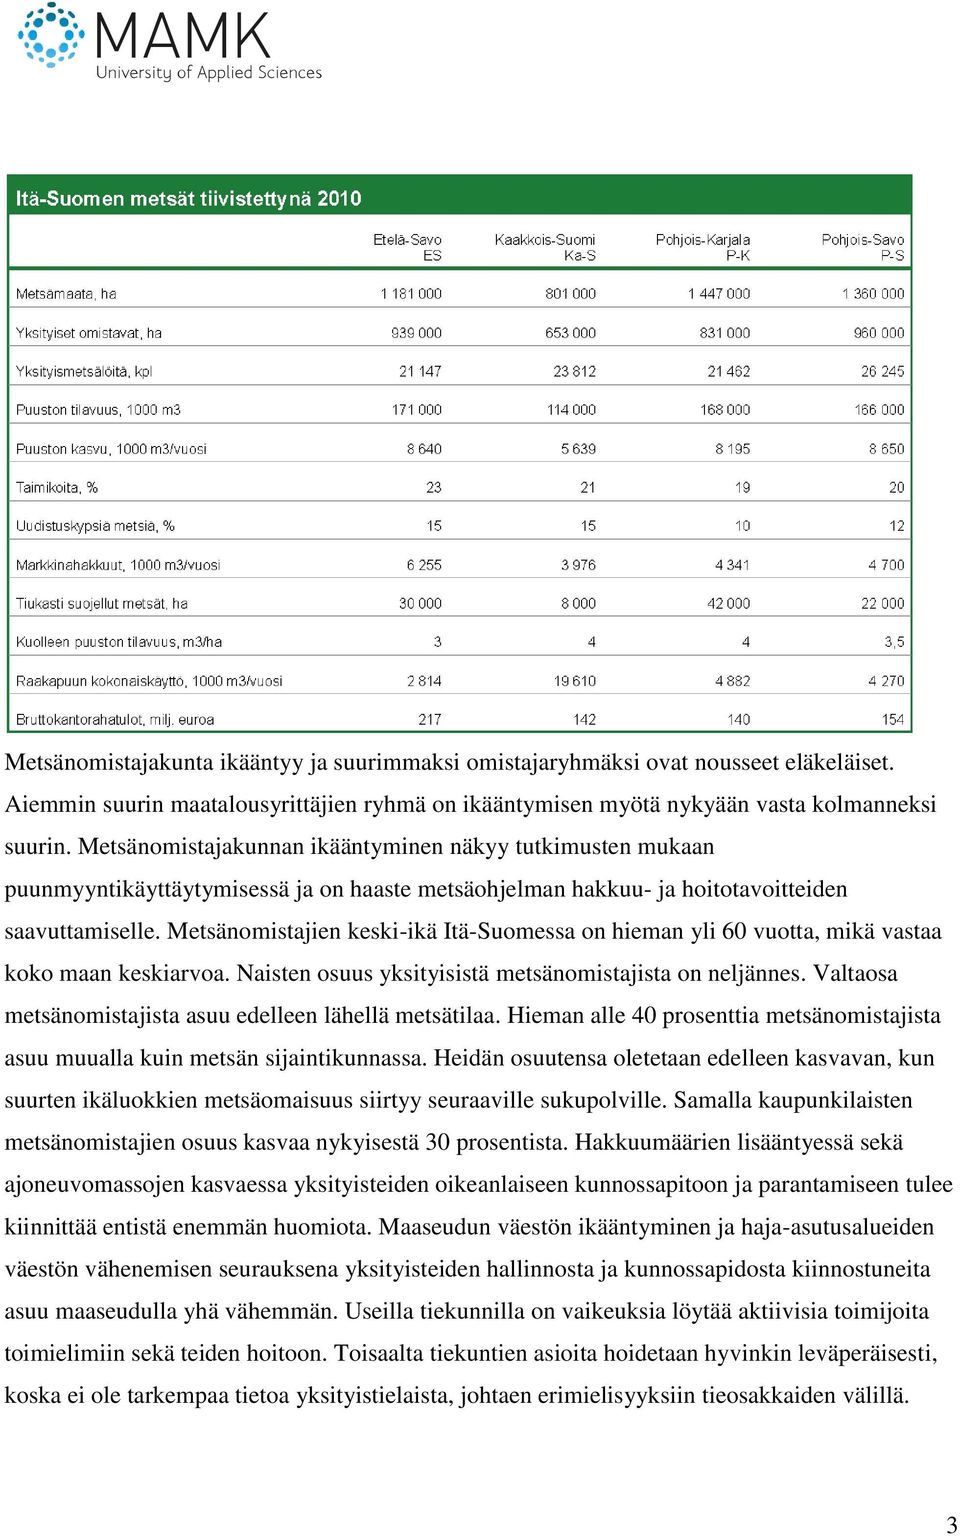 Metsänomistajien keski-ikä Itä-Suomessa on hieman yli 60 vuotta, mikä vastaa koko maan keskiarvoa. Naisten osuus yksityisistä metsänomistajista on neljännes.